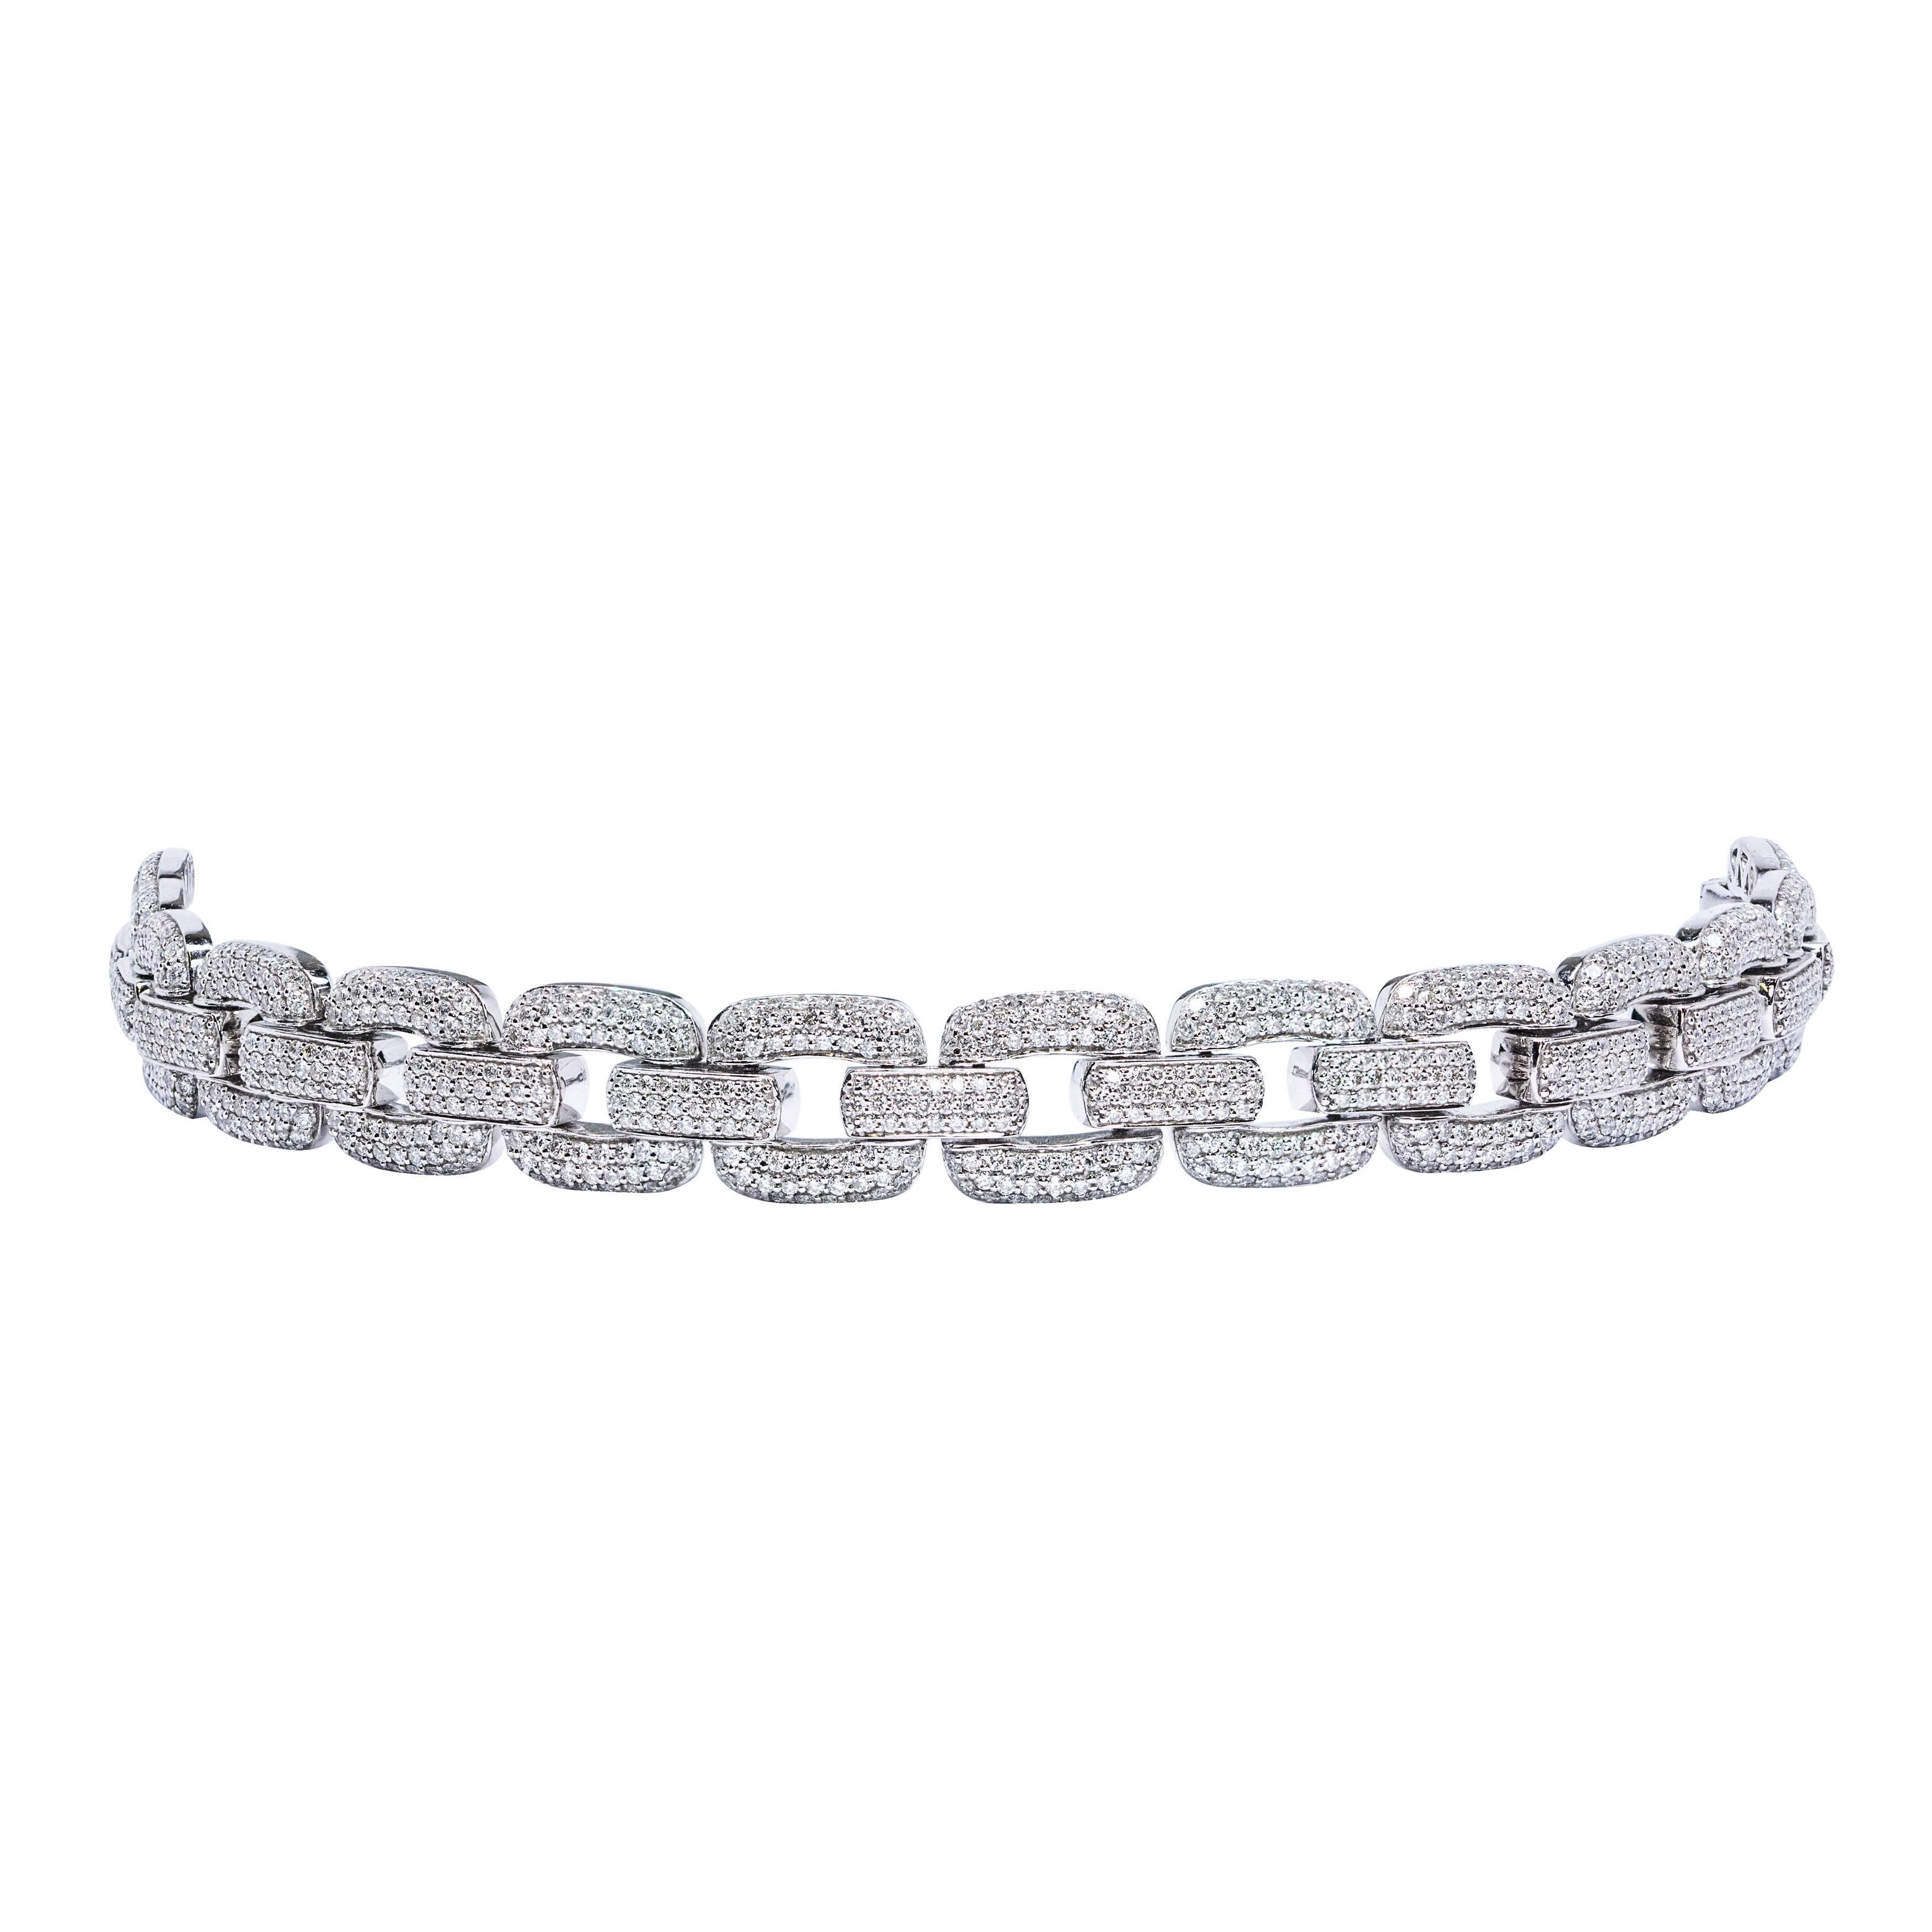 Superbe bracelet à maillons serti de diamants ronds de taille brillant micro-pavés d'une valeur totale de 6,55 carats. Les diamants sont de couleur F et de pureté VS. Serti en or blanc 18 carats, ce bracelet mesure environ 7 pouces de long et 0,45